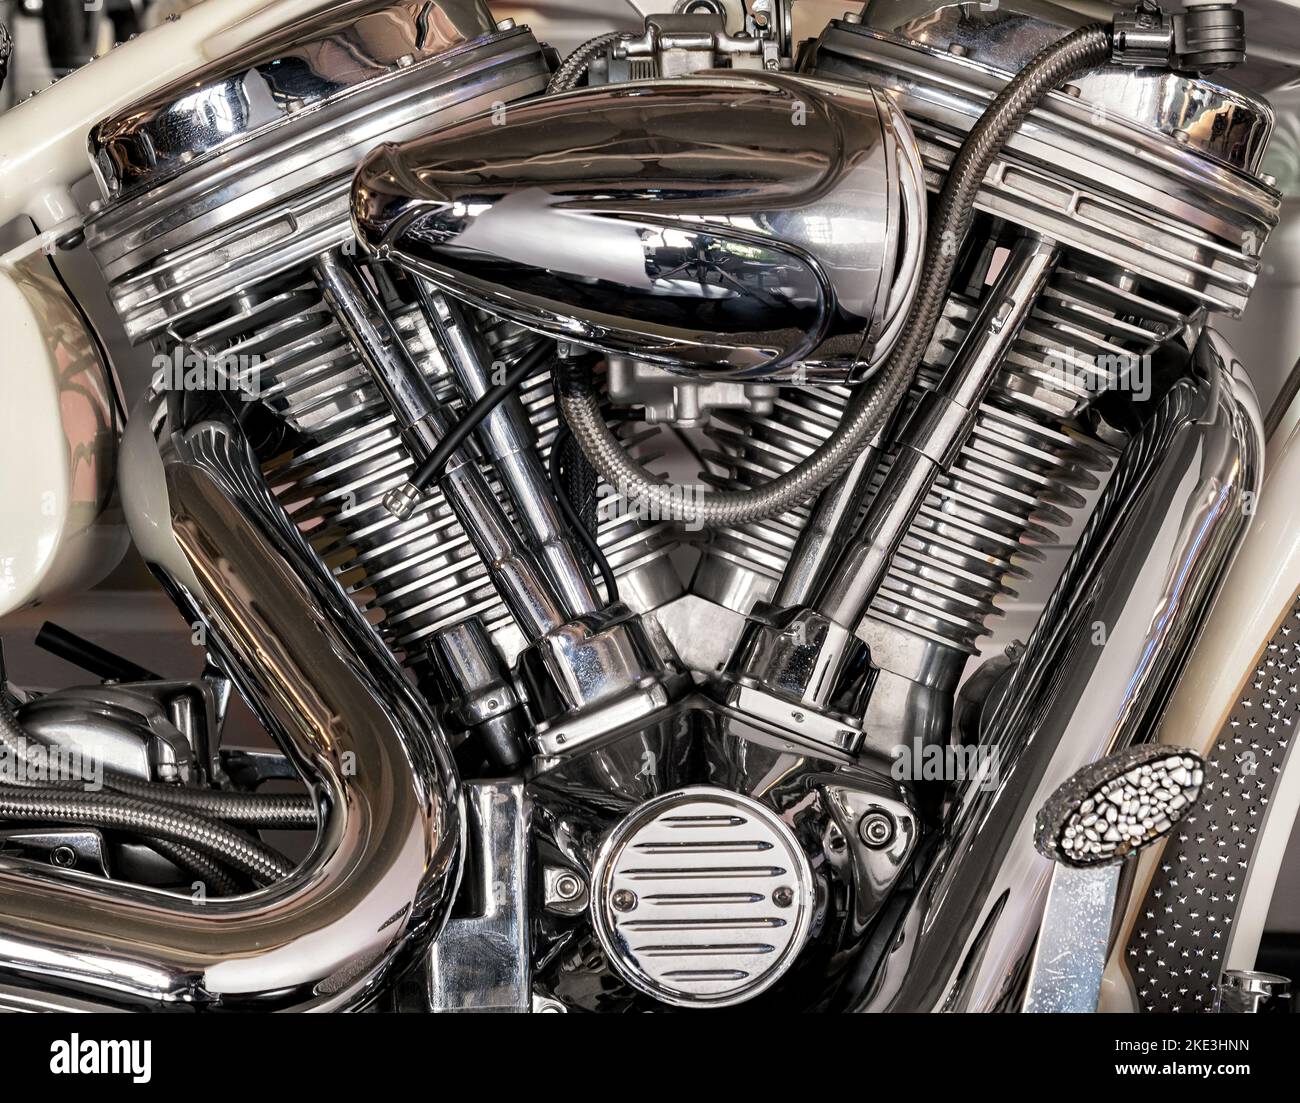 Gros plan des détails chromés brillants d'un moteur de moto moderne stationné dans un garage en journée Banque D'Images